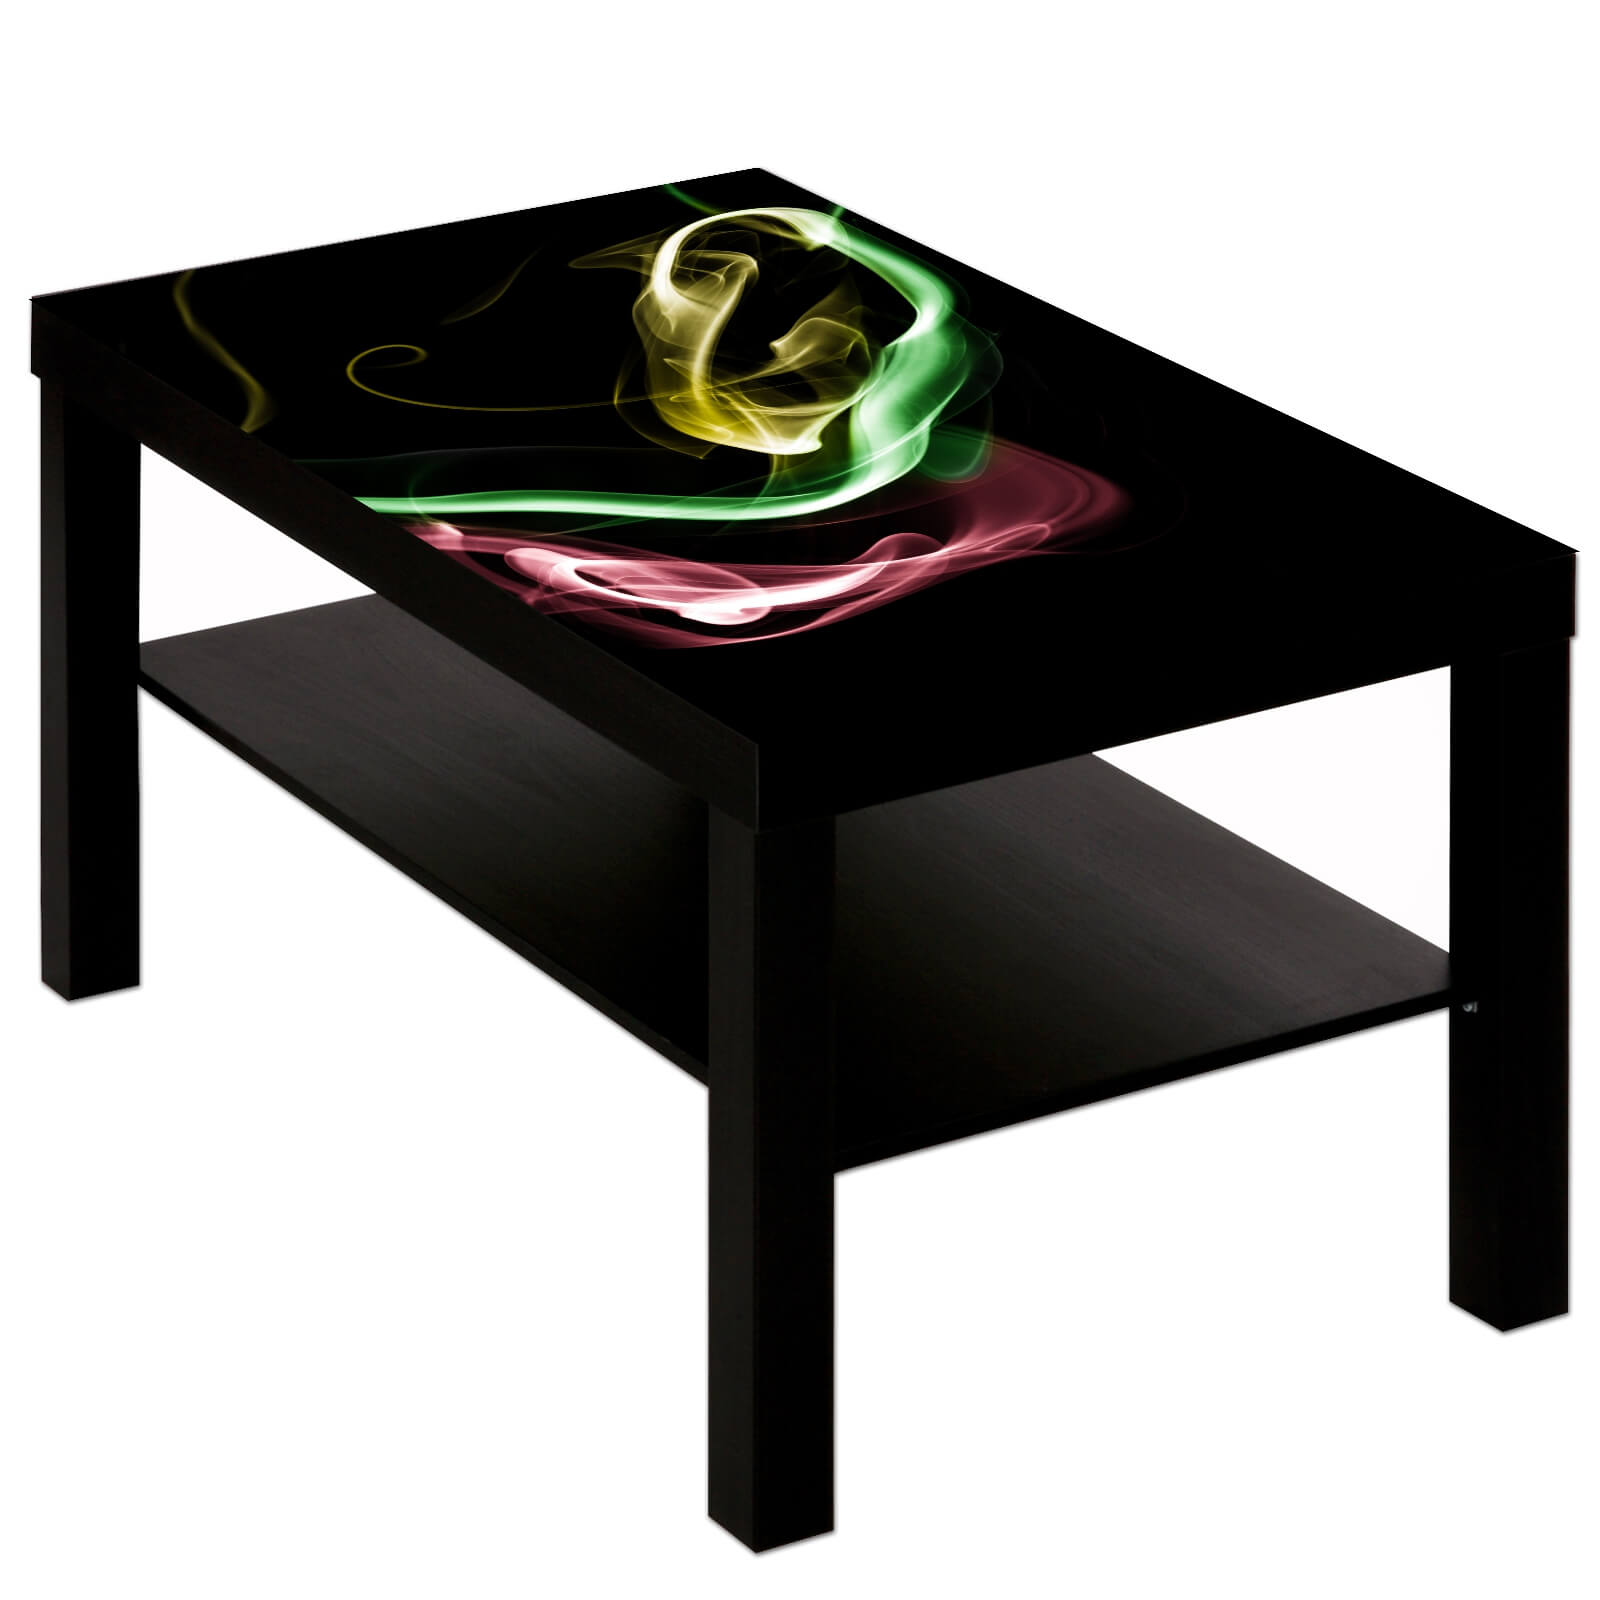 Couchtisch Tisch mit Motiv Bild Muster Rauch in Farbe aus schwarz